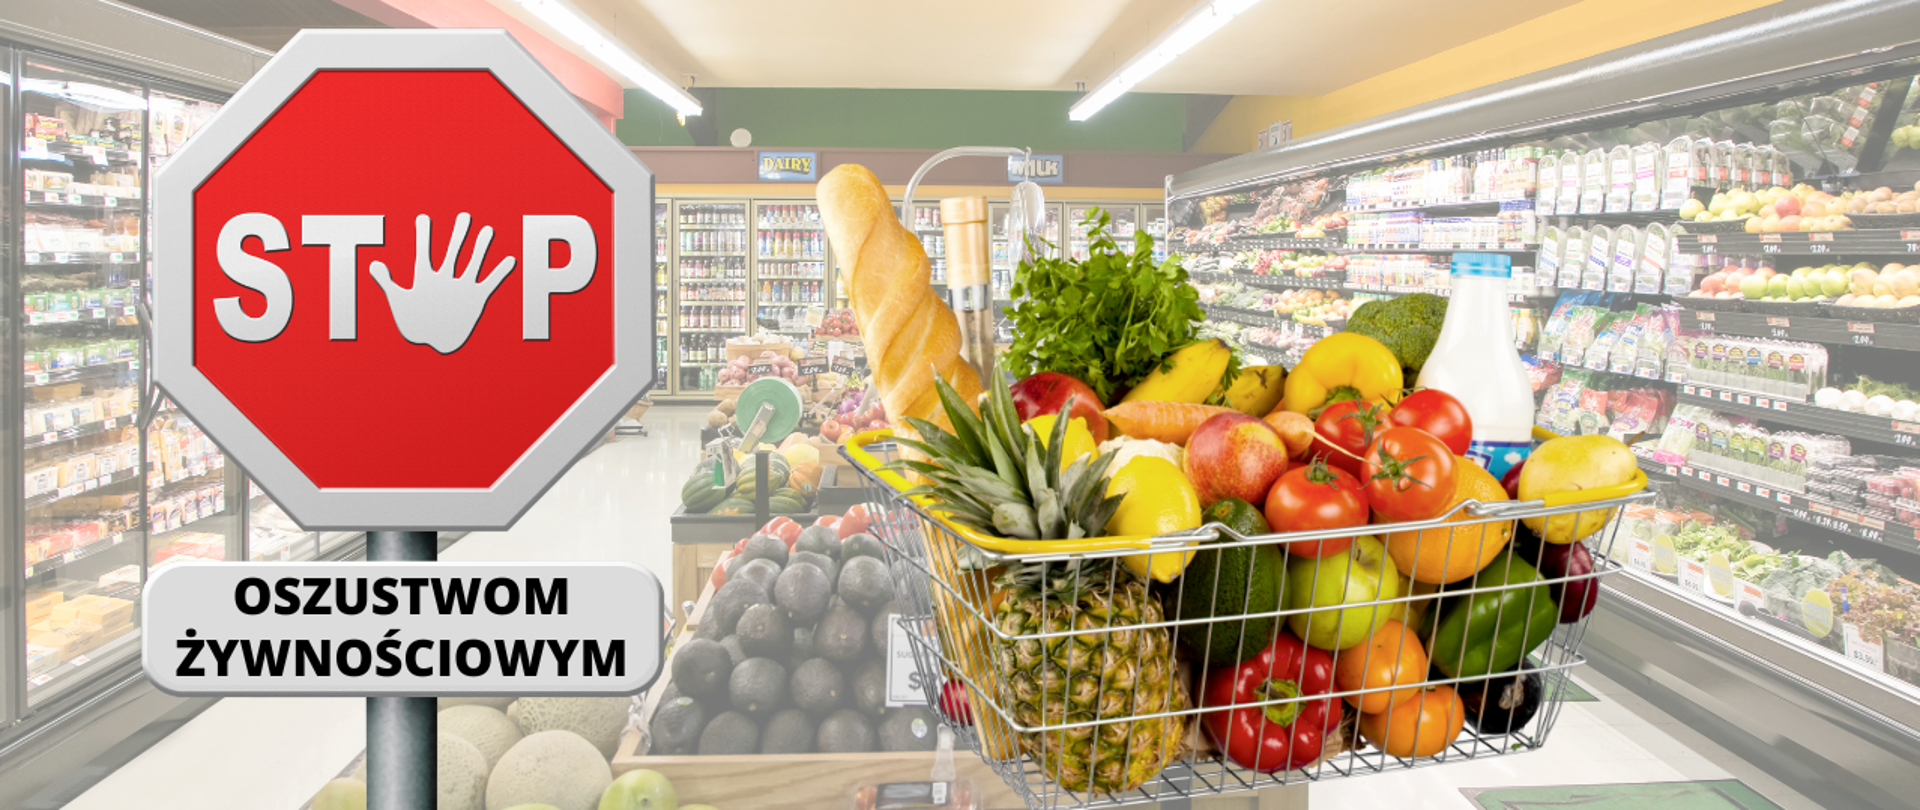 Znak czerwony z białym napisem STOP i tabliczką z napisem: oszustwom żywnościowym. Obok po prawej metalowy koszyk sklepowy wypełnony produktami spozywczymi, w tle wnętrze sklepu spożywczego, z połkami wypełnionymi produktami spozywczymi.